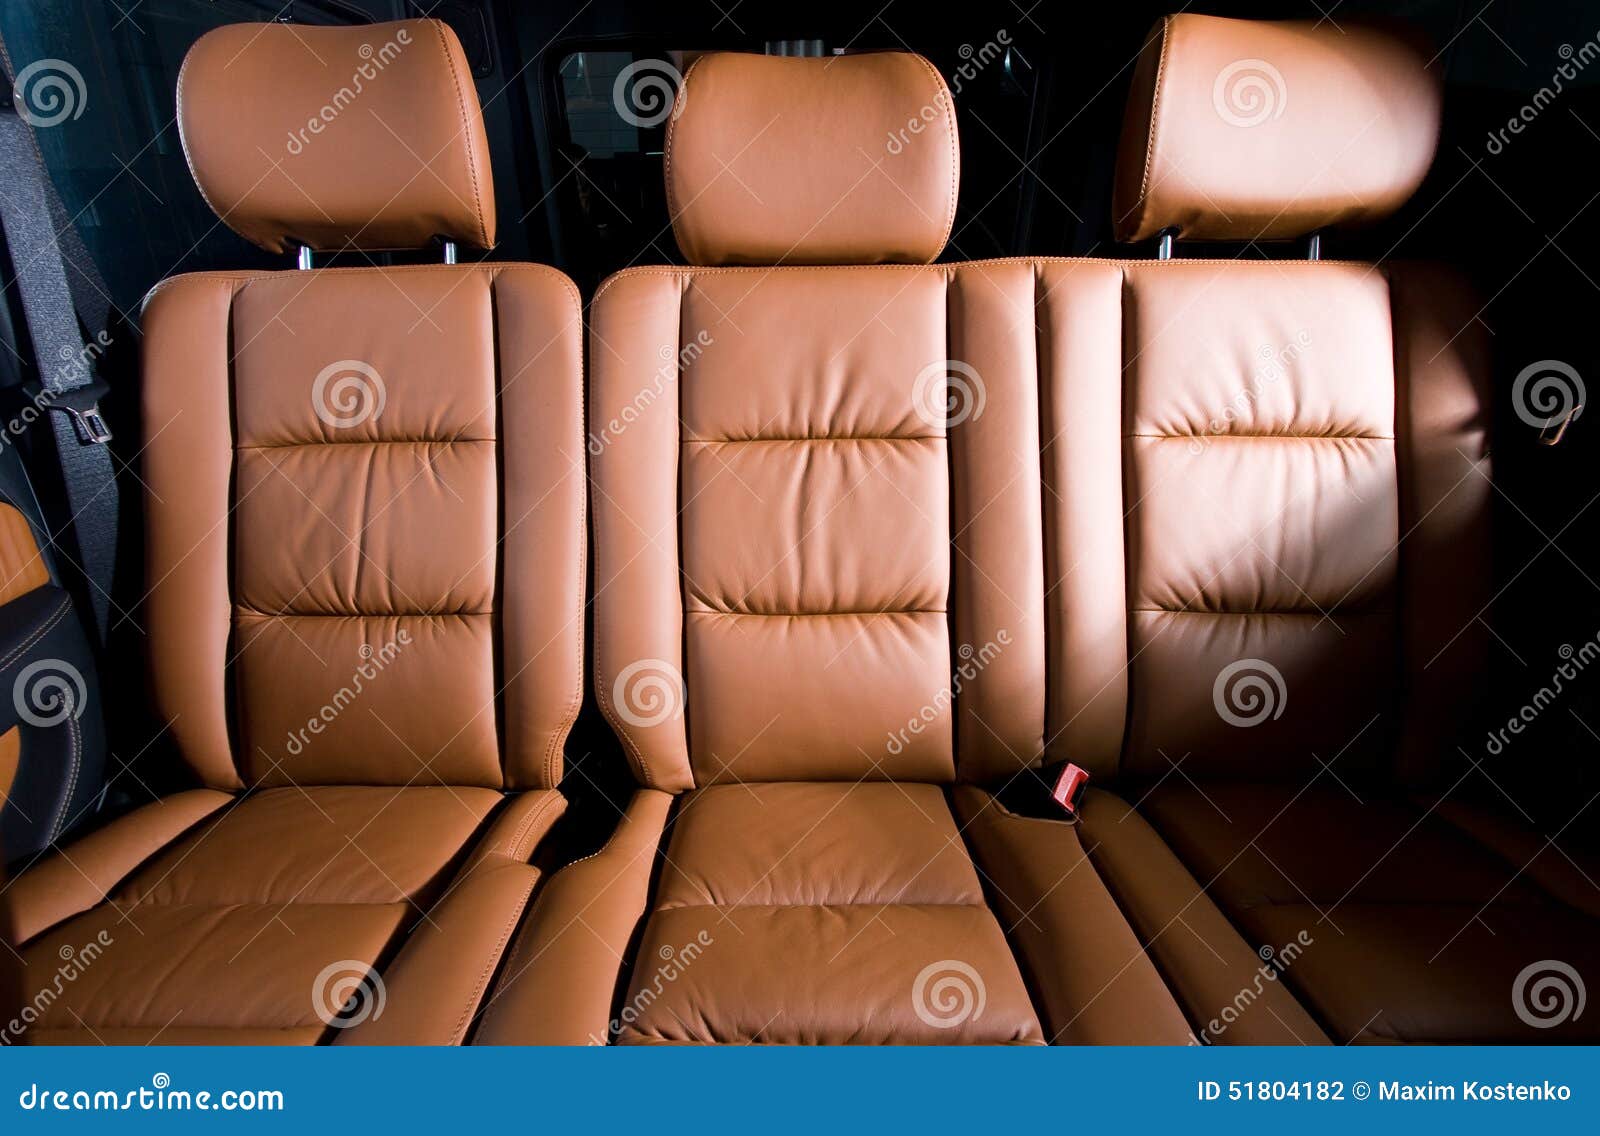 Без пассажирских сидений. Заднее сиденье машины. Пассажирские сидения в автомобиле. Задние пассажирские сиденья в автомобиле. Заднее пассажирское сиденье.